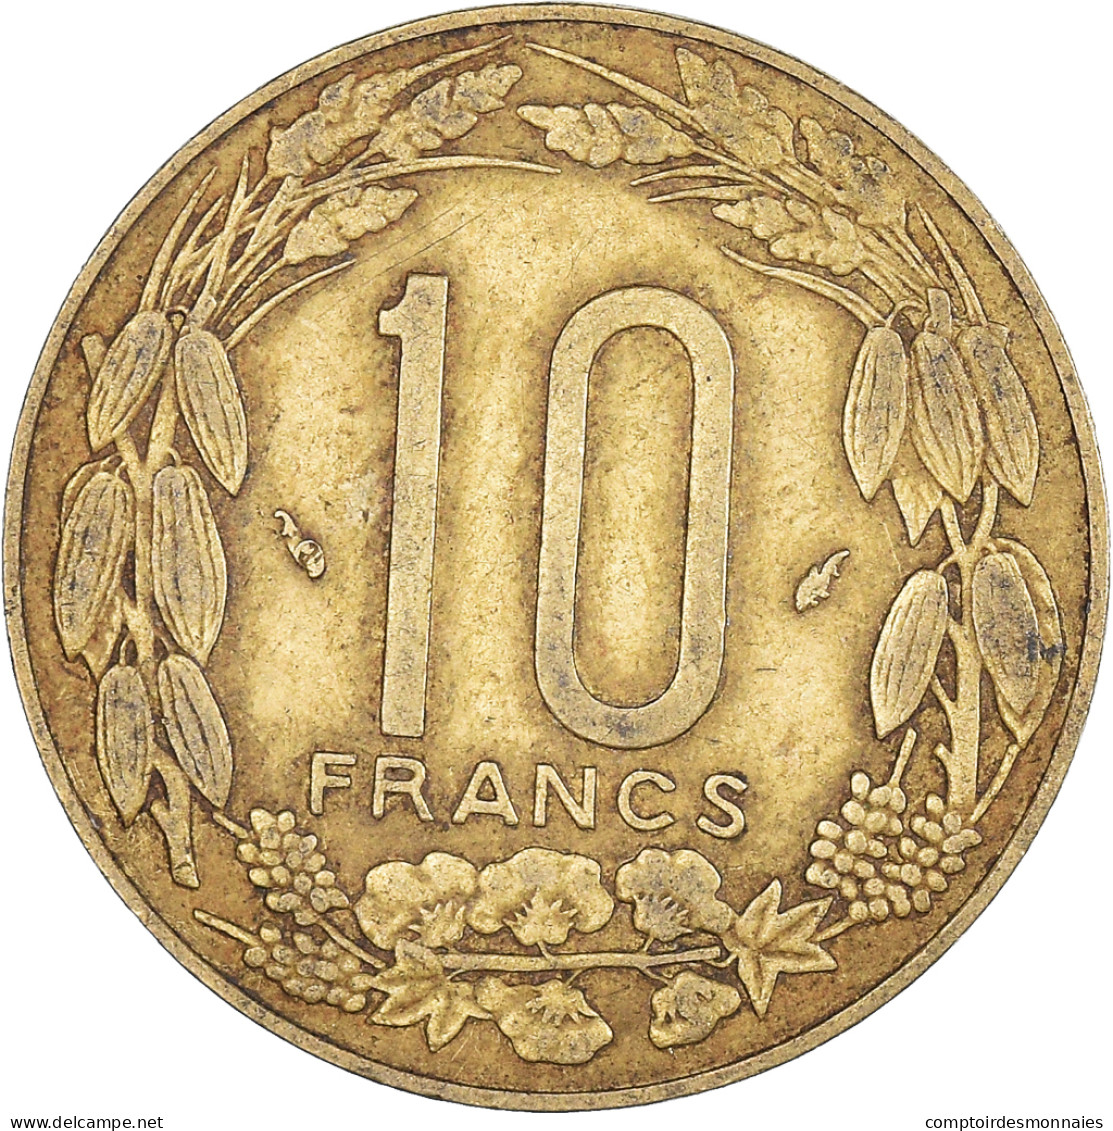 Monnaie, États De L'Afrique Centrale, 10 Francs, 1983 - Centraal-Afrikaanse Republiek